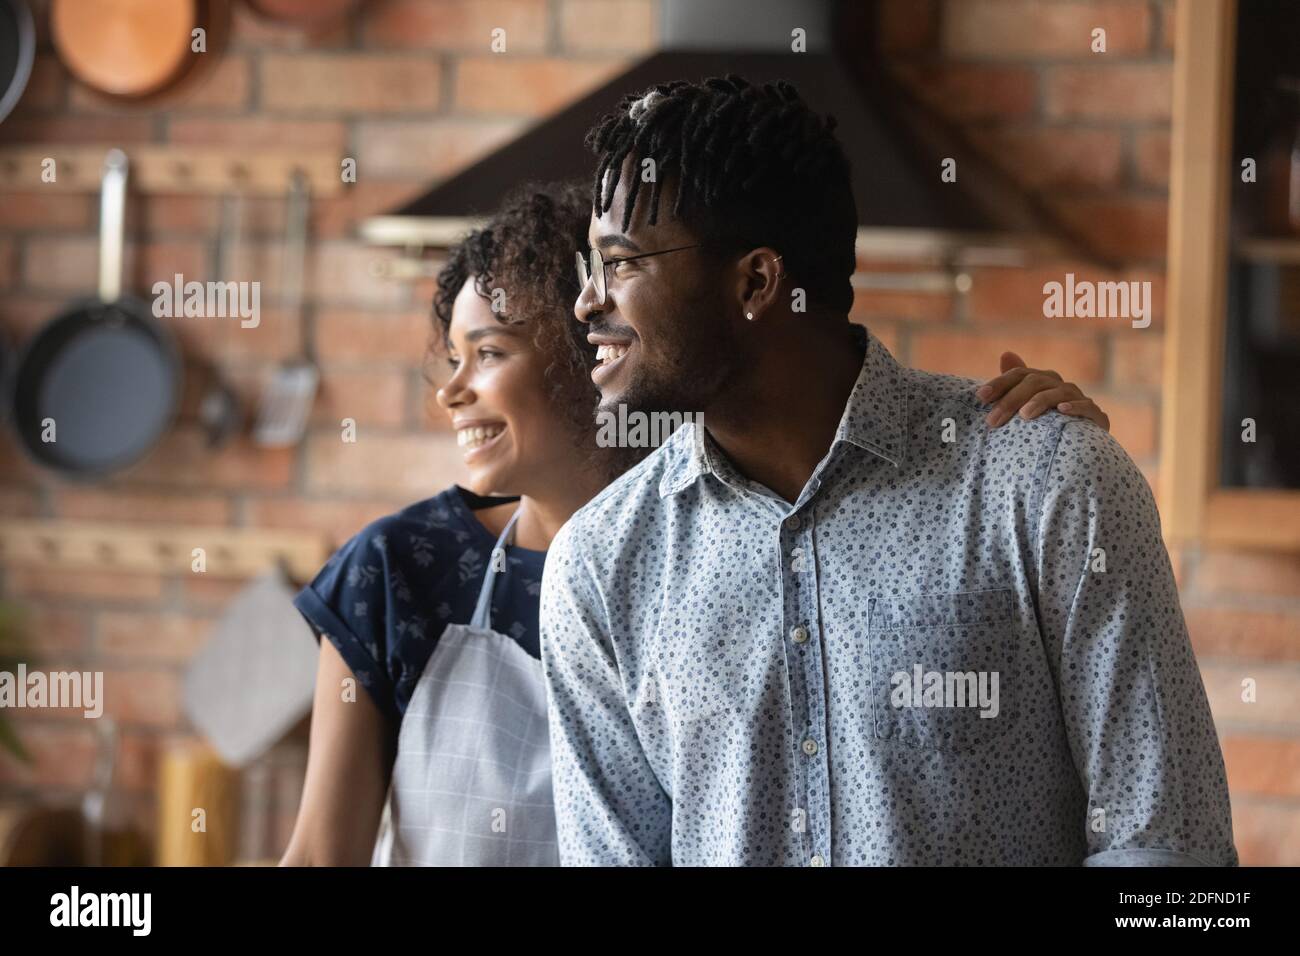 Felice giovane coppia afro-americana bonding sognando all'interno. Foto Stock